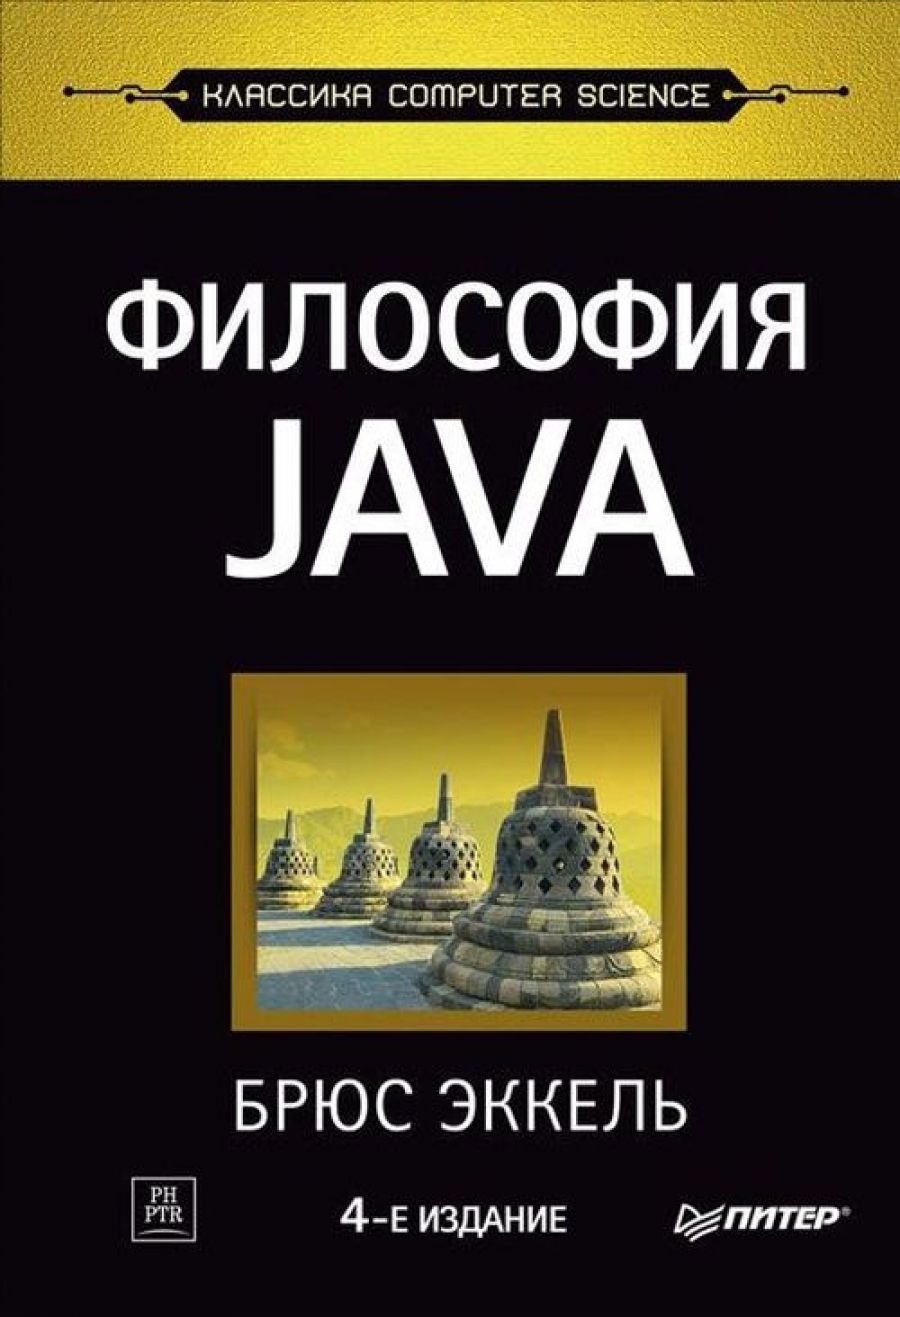  .  Java 